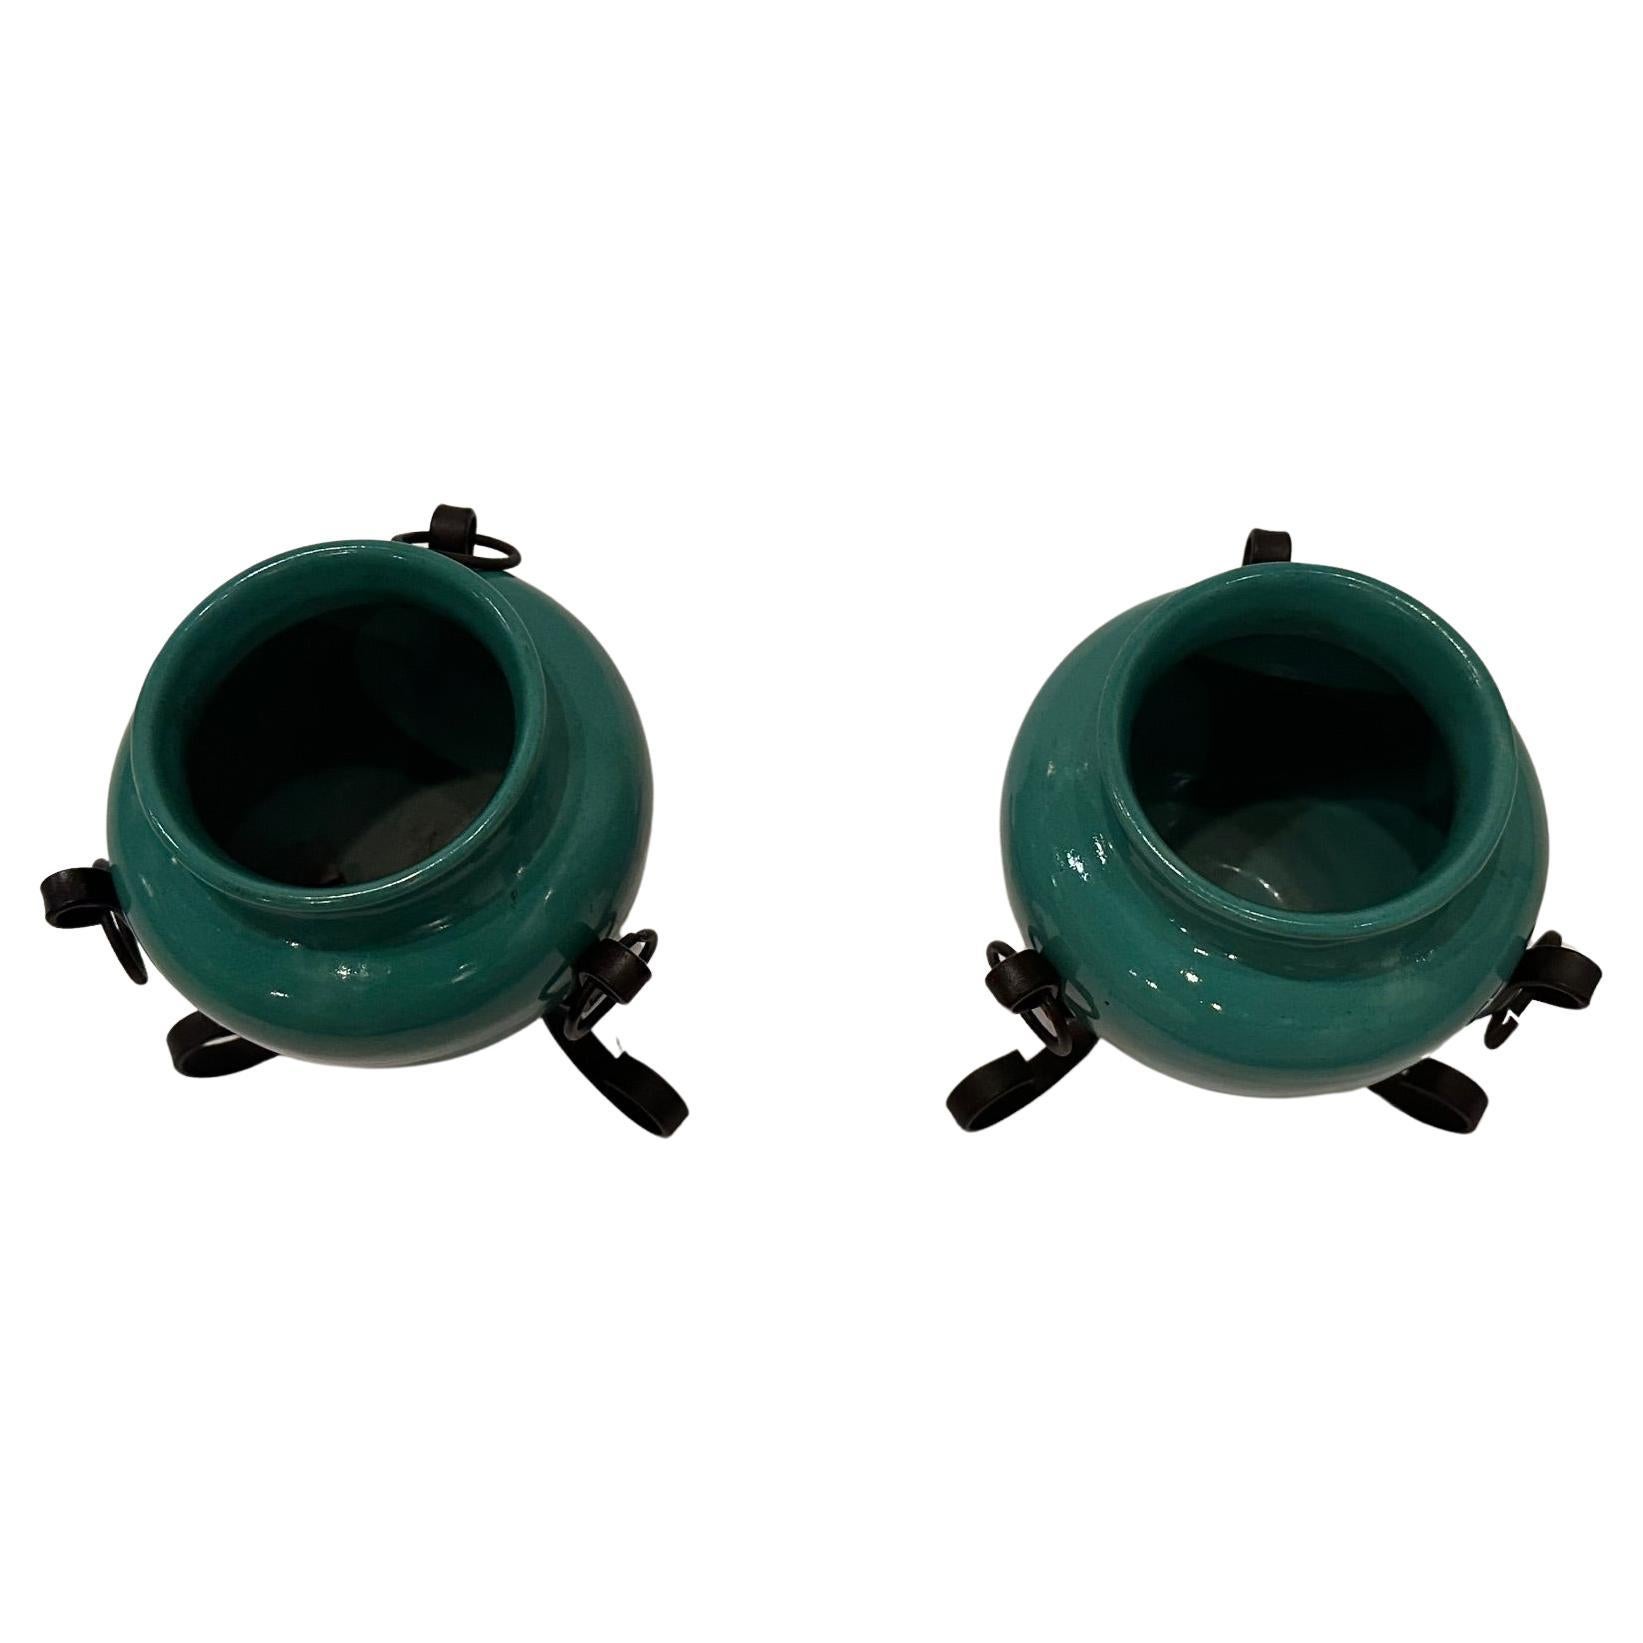 Ensemble élégant de vases en poterie italienne de couleur vert céladon, montés sur des supports en fer forgé noir.  ouverture 2.75